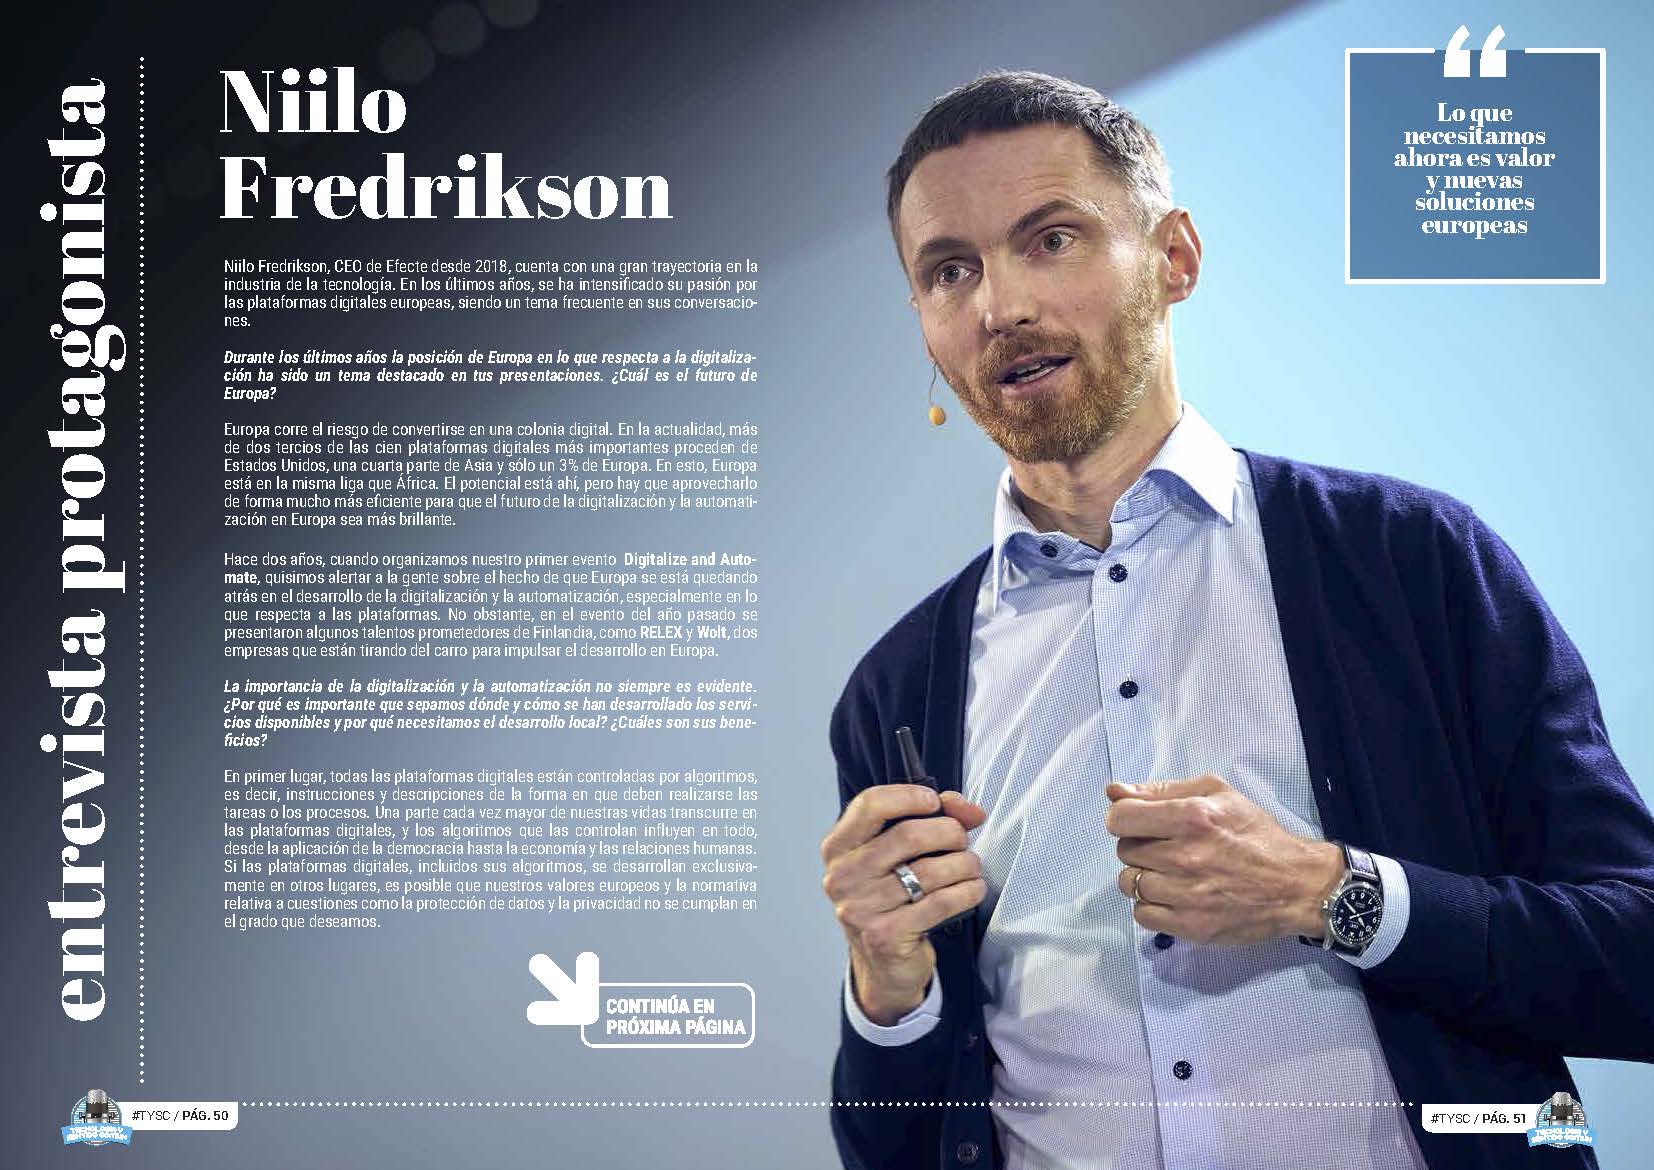 Niilo Frediikson Entrevista Protagonista en la Revista Tecnología y Sentido Comun #TYSC de septiembre de 2022